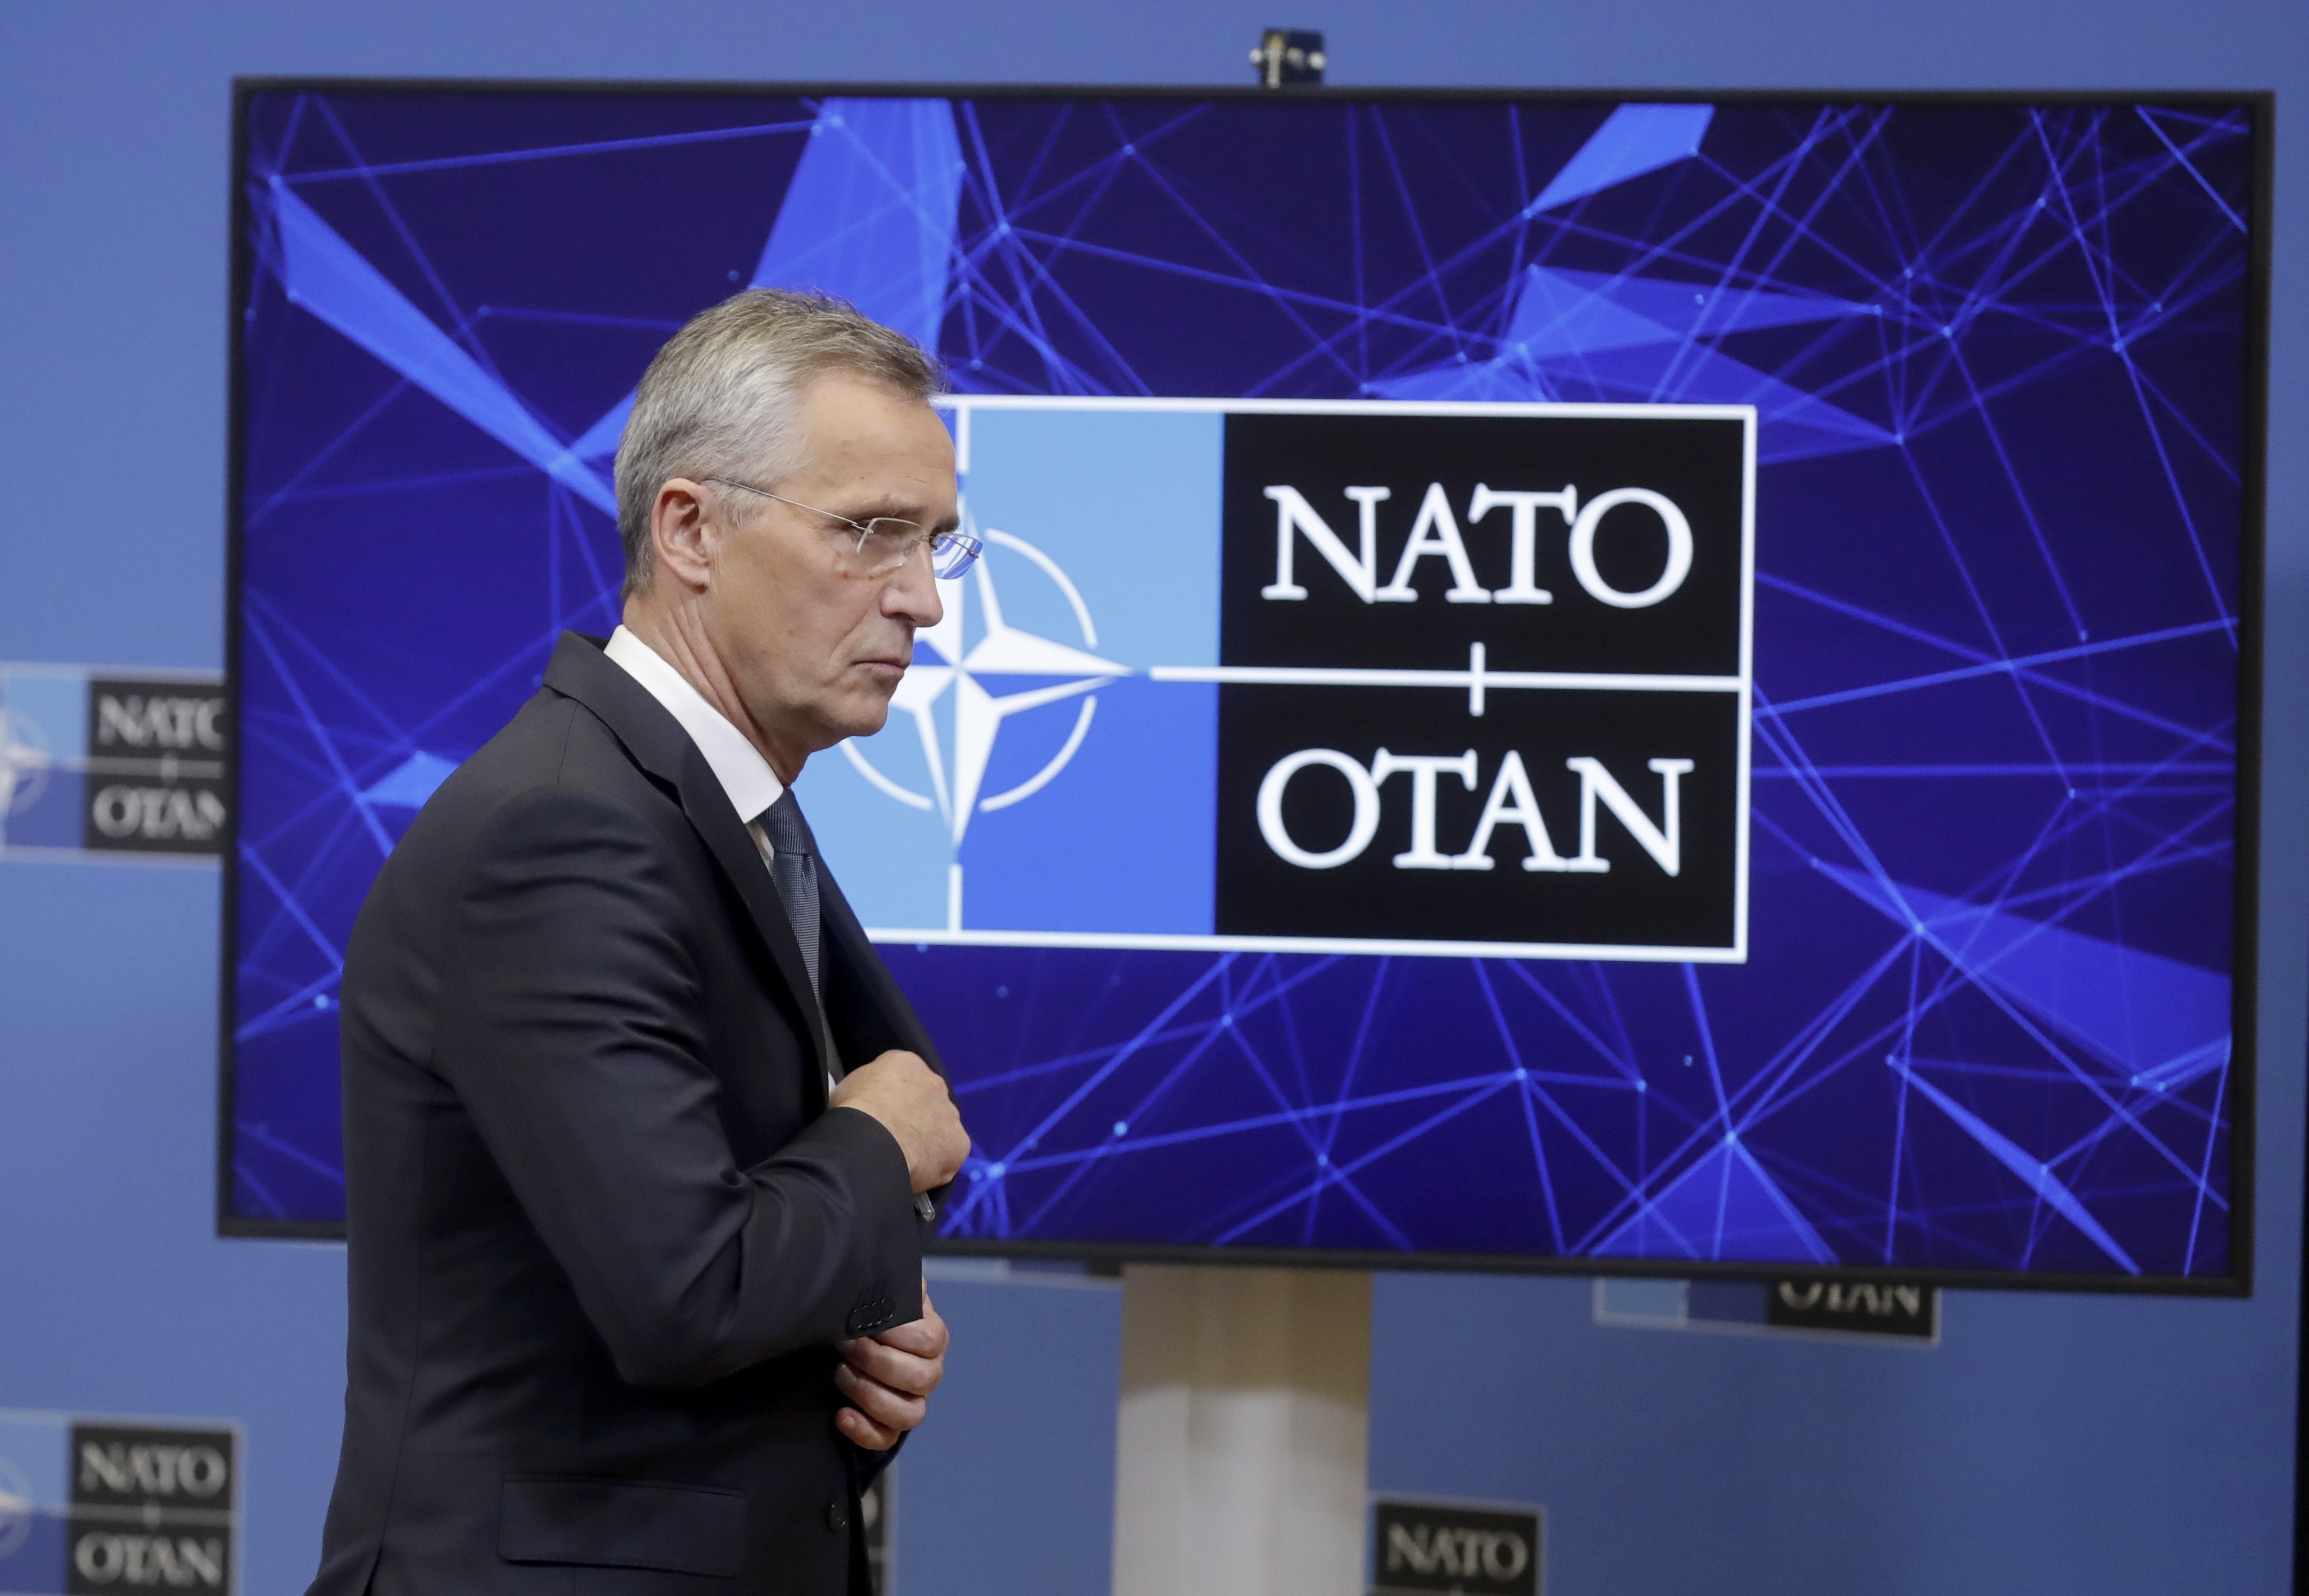 L'OTAN avisa: "Atacar a un dels nostres aliats desencadenarà la resposta de tots"